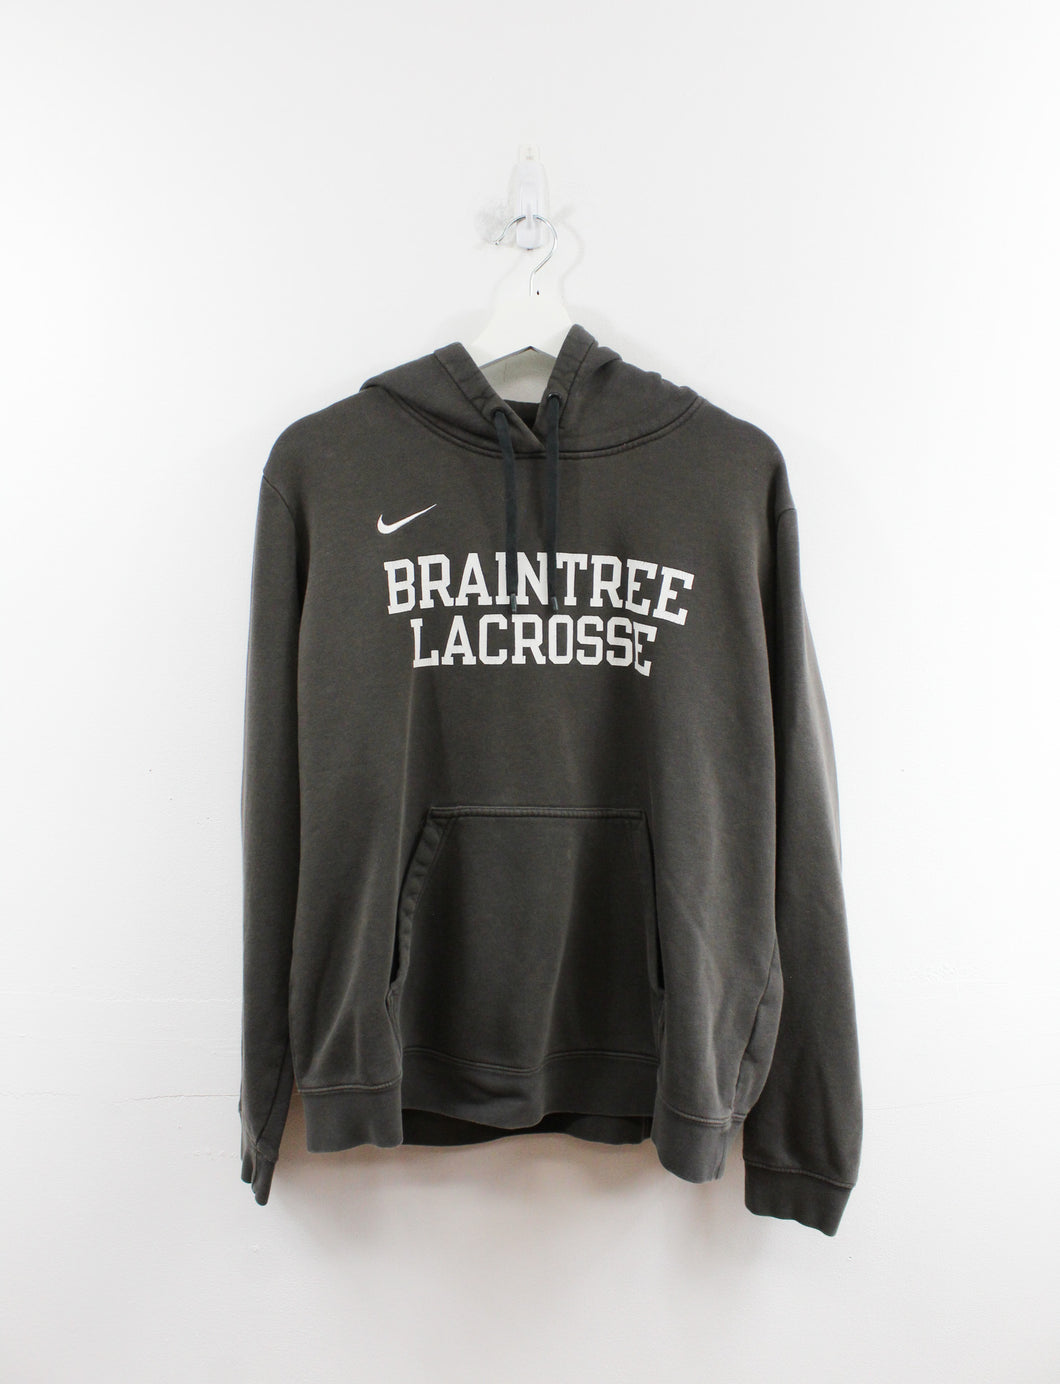 Nike Braintree Lacrosse Hoodie